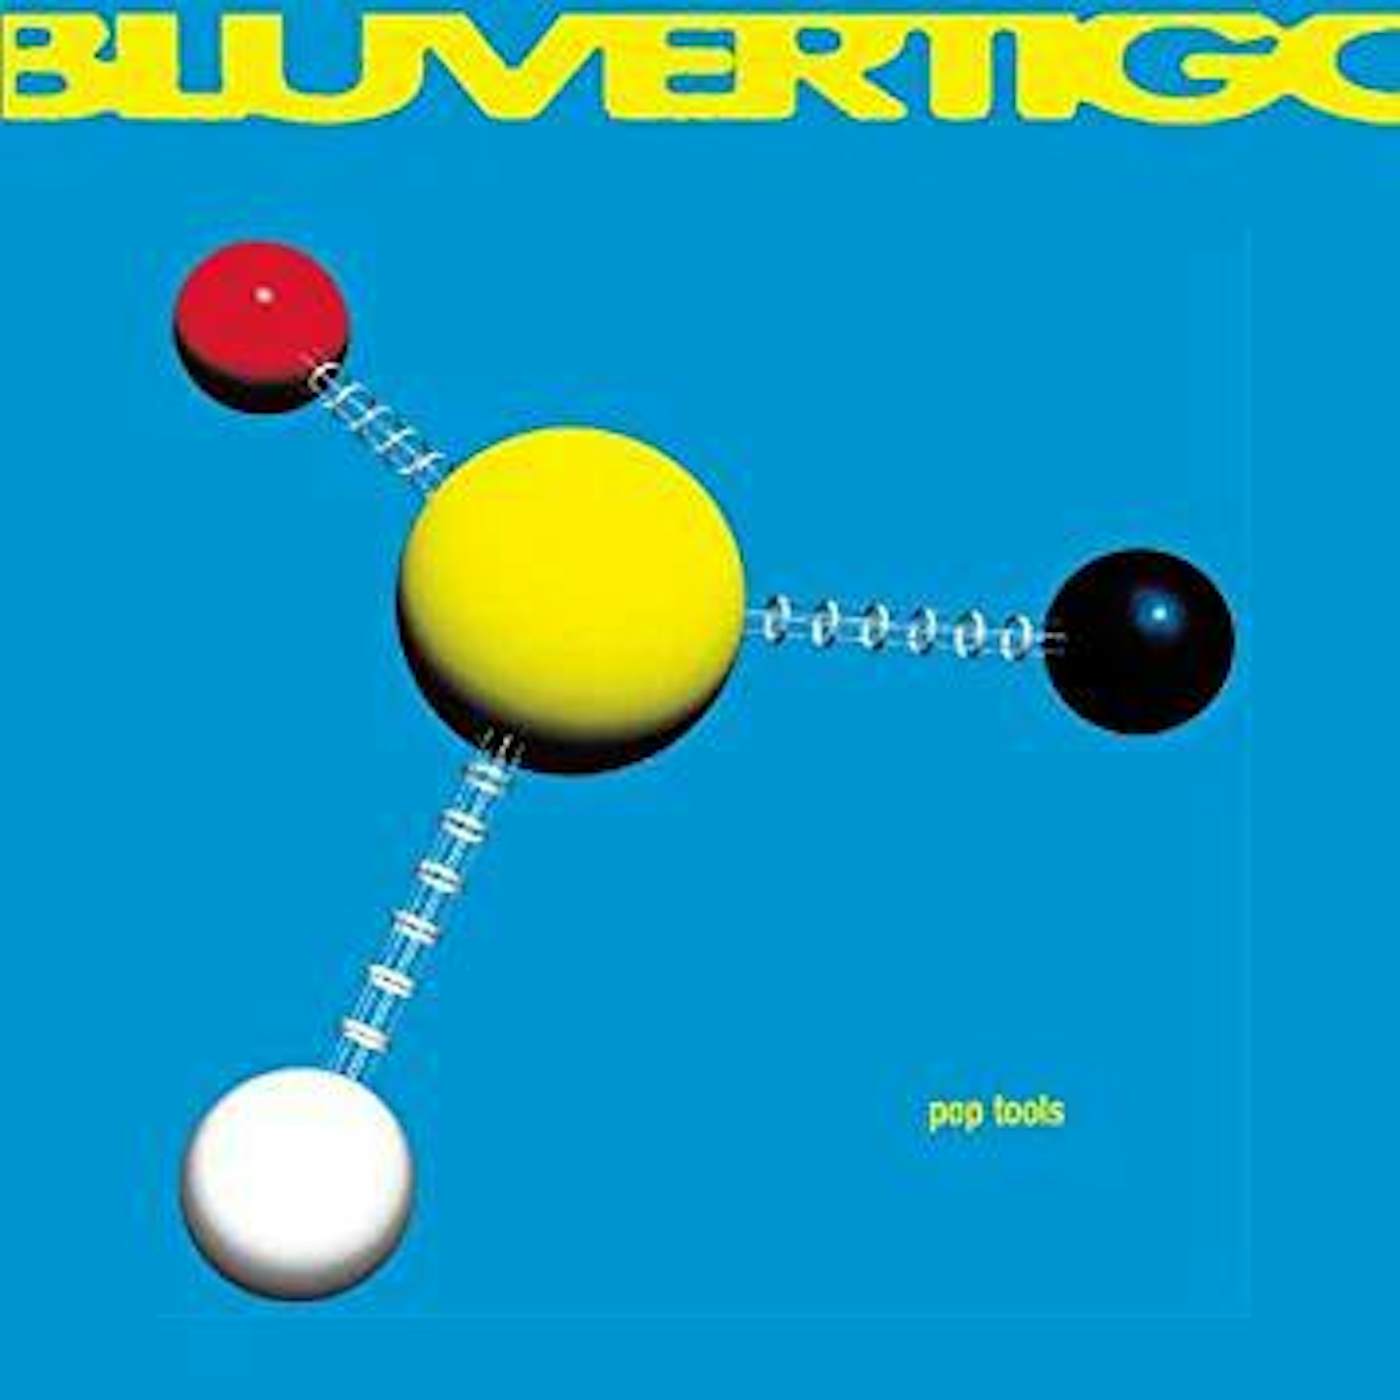 Bluvertigo Pop Tools (Alcune Fasi E Forme D'onda) vinyl record